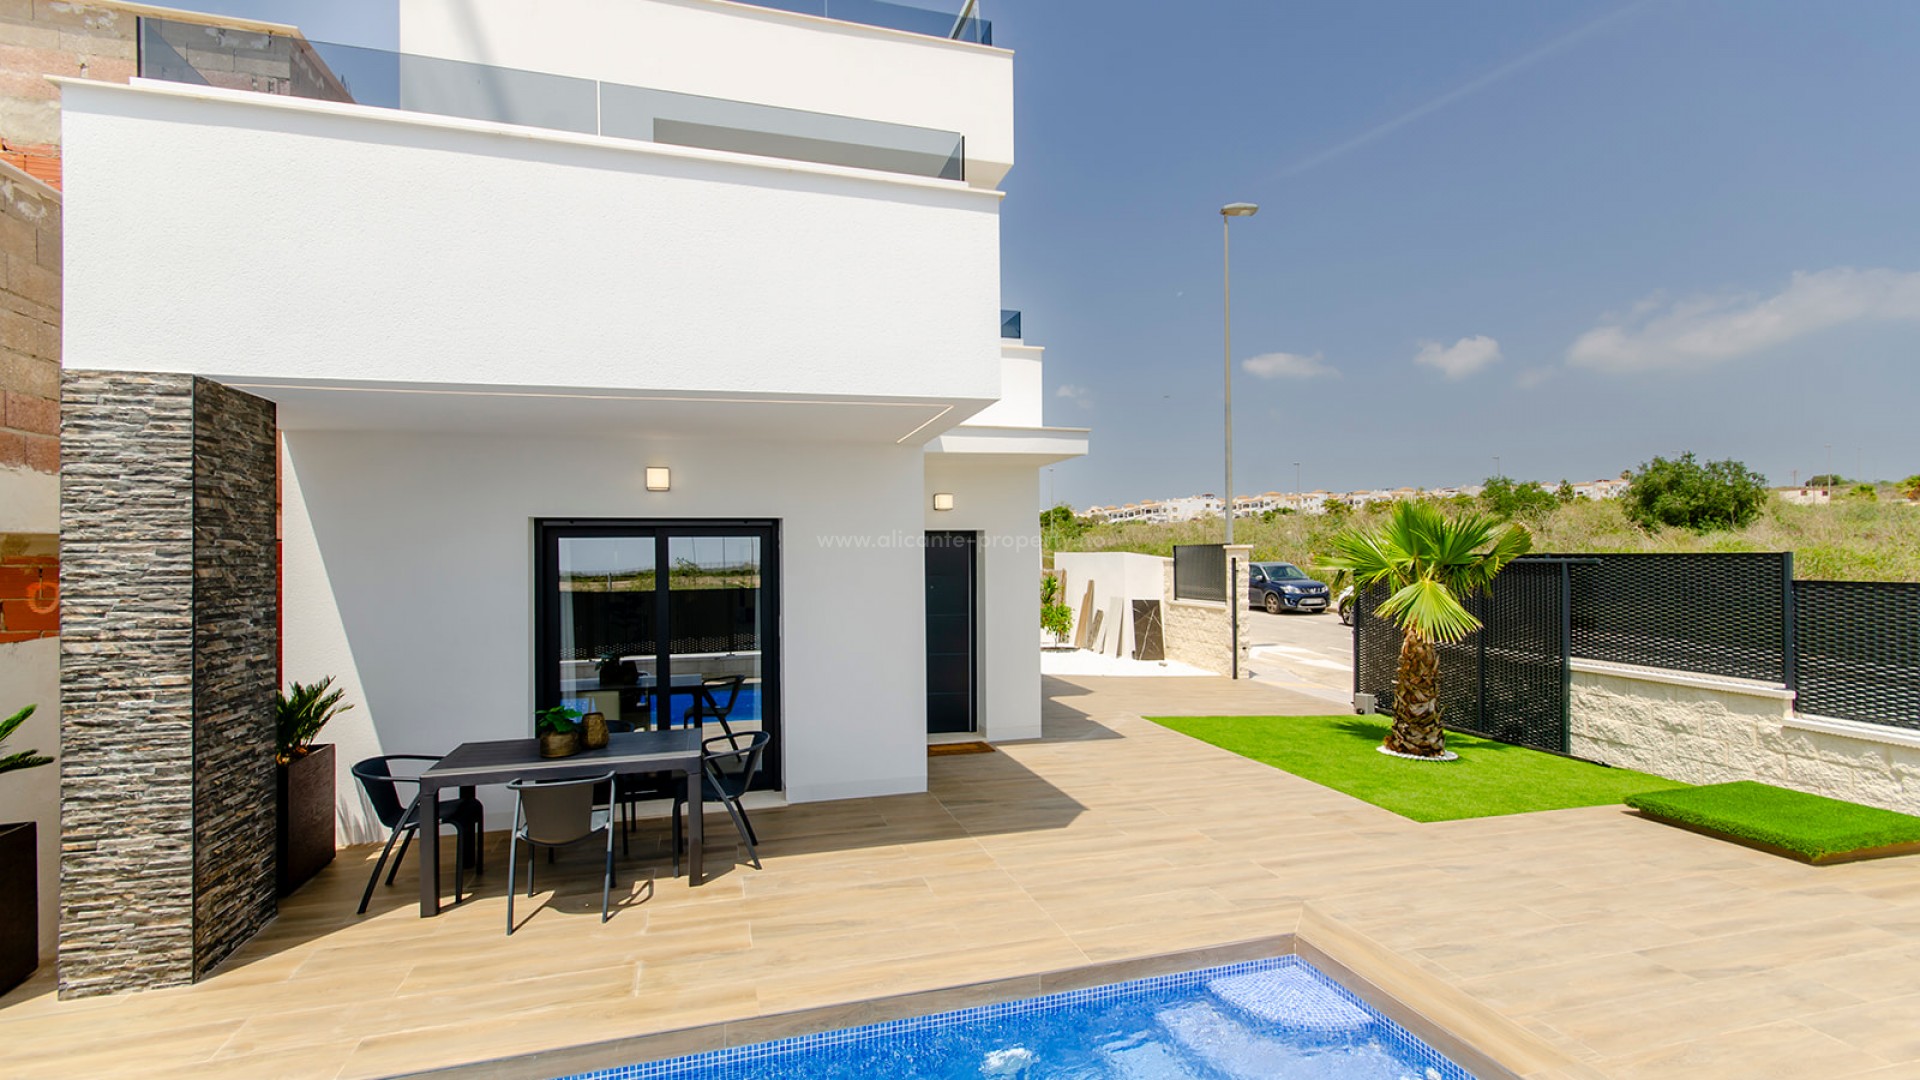 Villa/hus i Vistabella Golf med 3 soverom, 3 bad, en lys , moderne og luftig stue og spisestue, privat svømmebasseng, stor terrasse og solarium, parkering